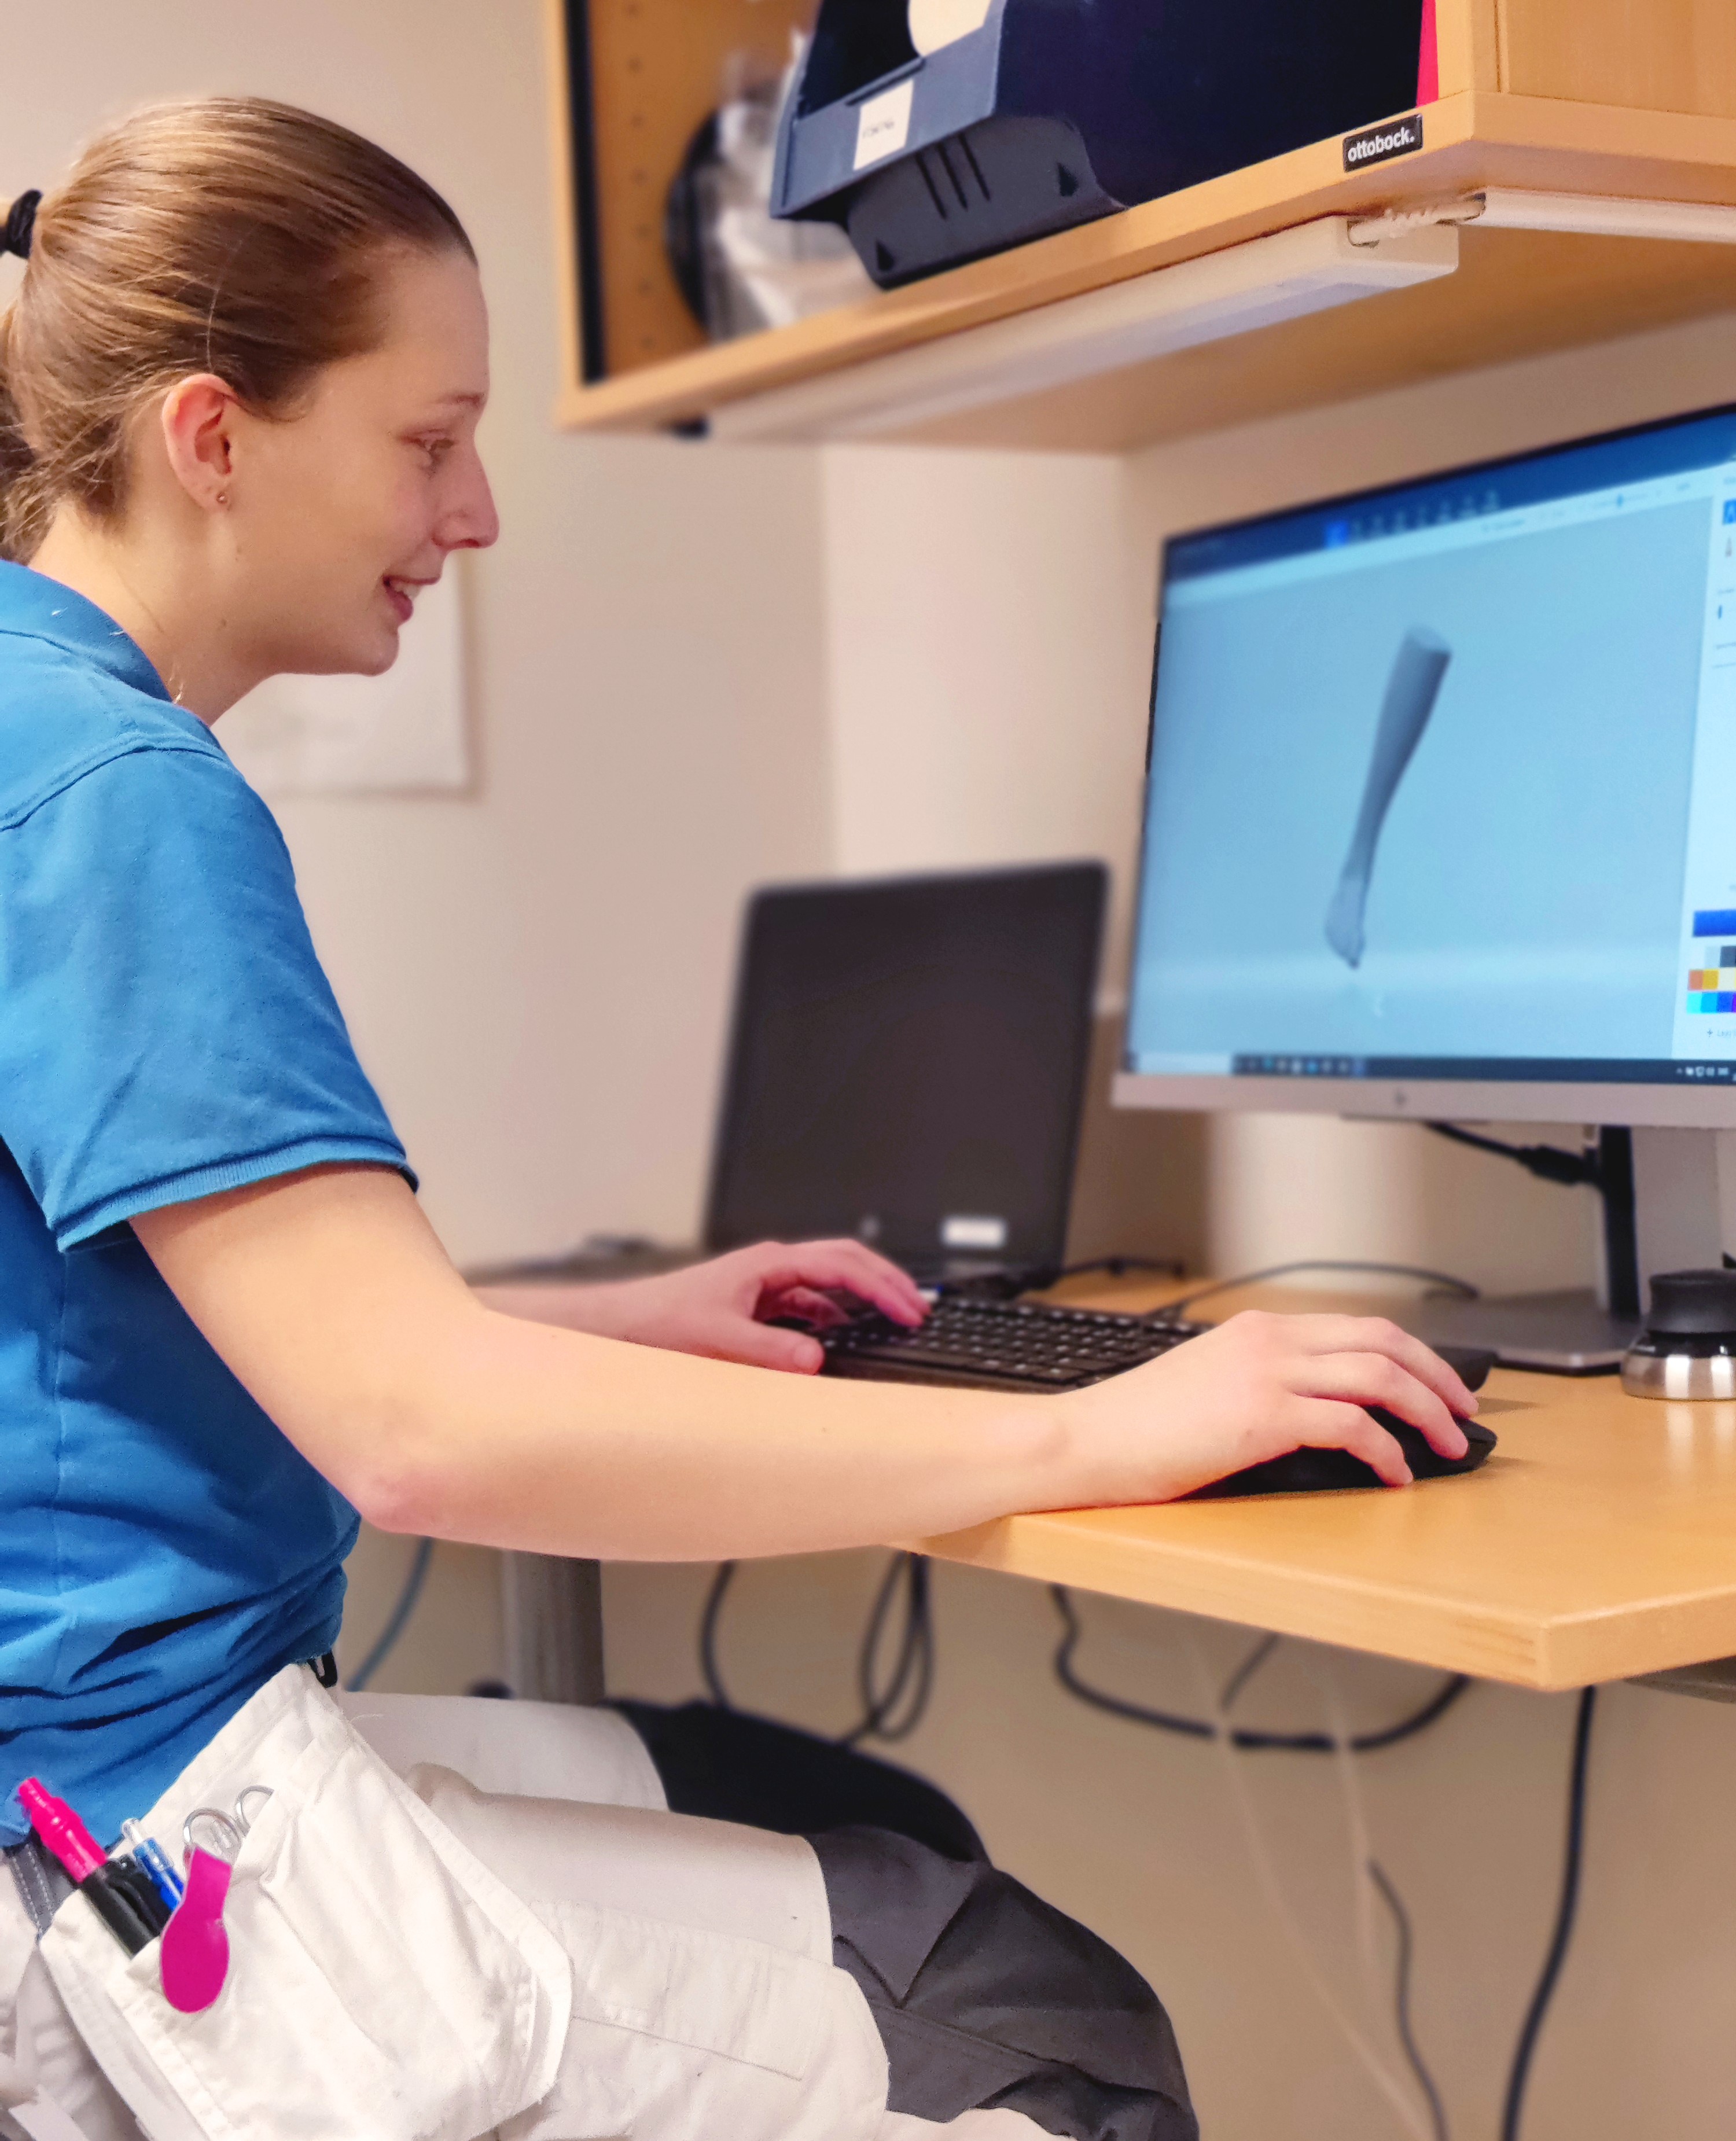 Kvinna framför dator som visar en fotprotes.